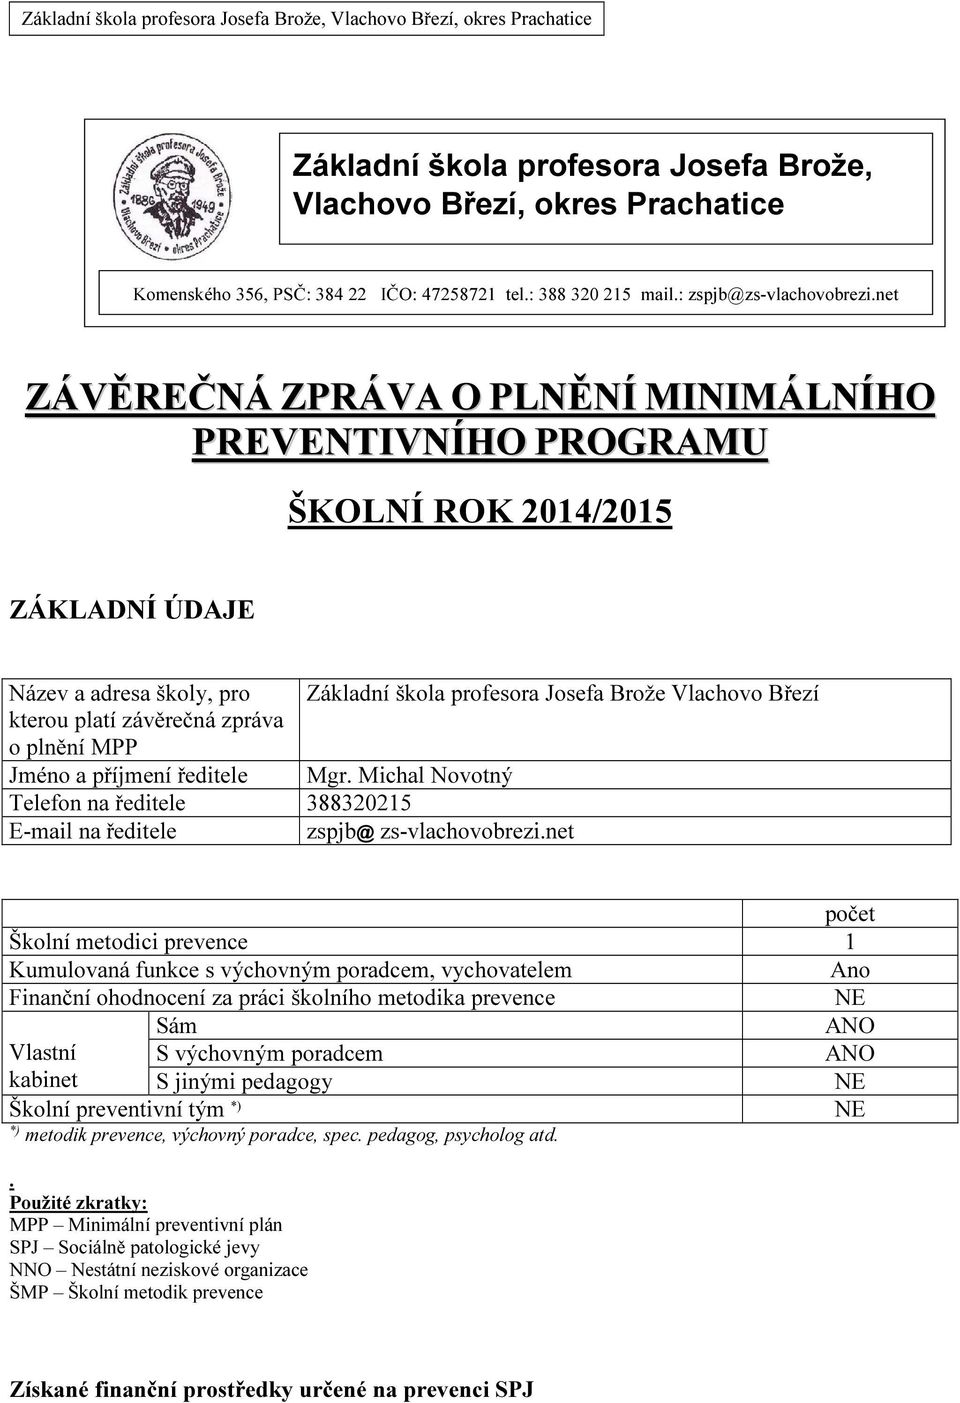 zpráva o plnění MPP Jméno a příjmení ředitele Mgr. Michal Telefon na ředitele 388320215 E-mail na ředitele zspjb@ zs-vlachovobrezi.